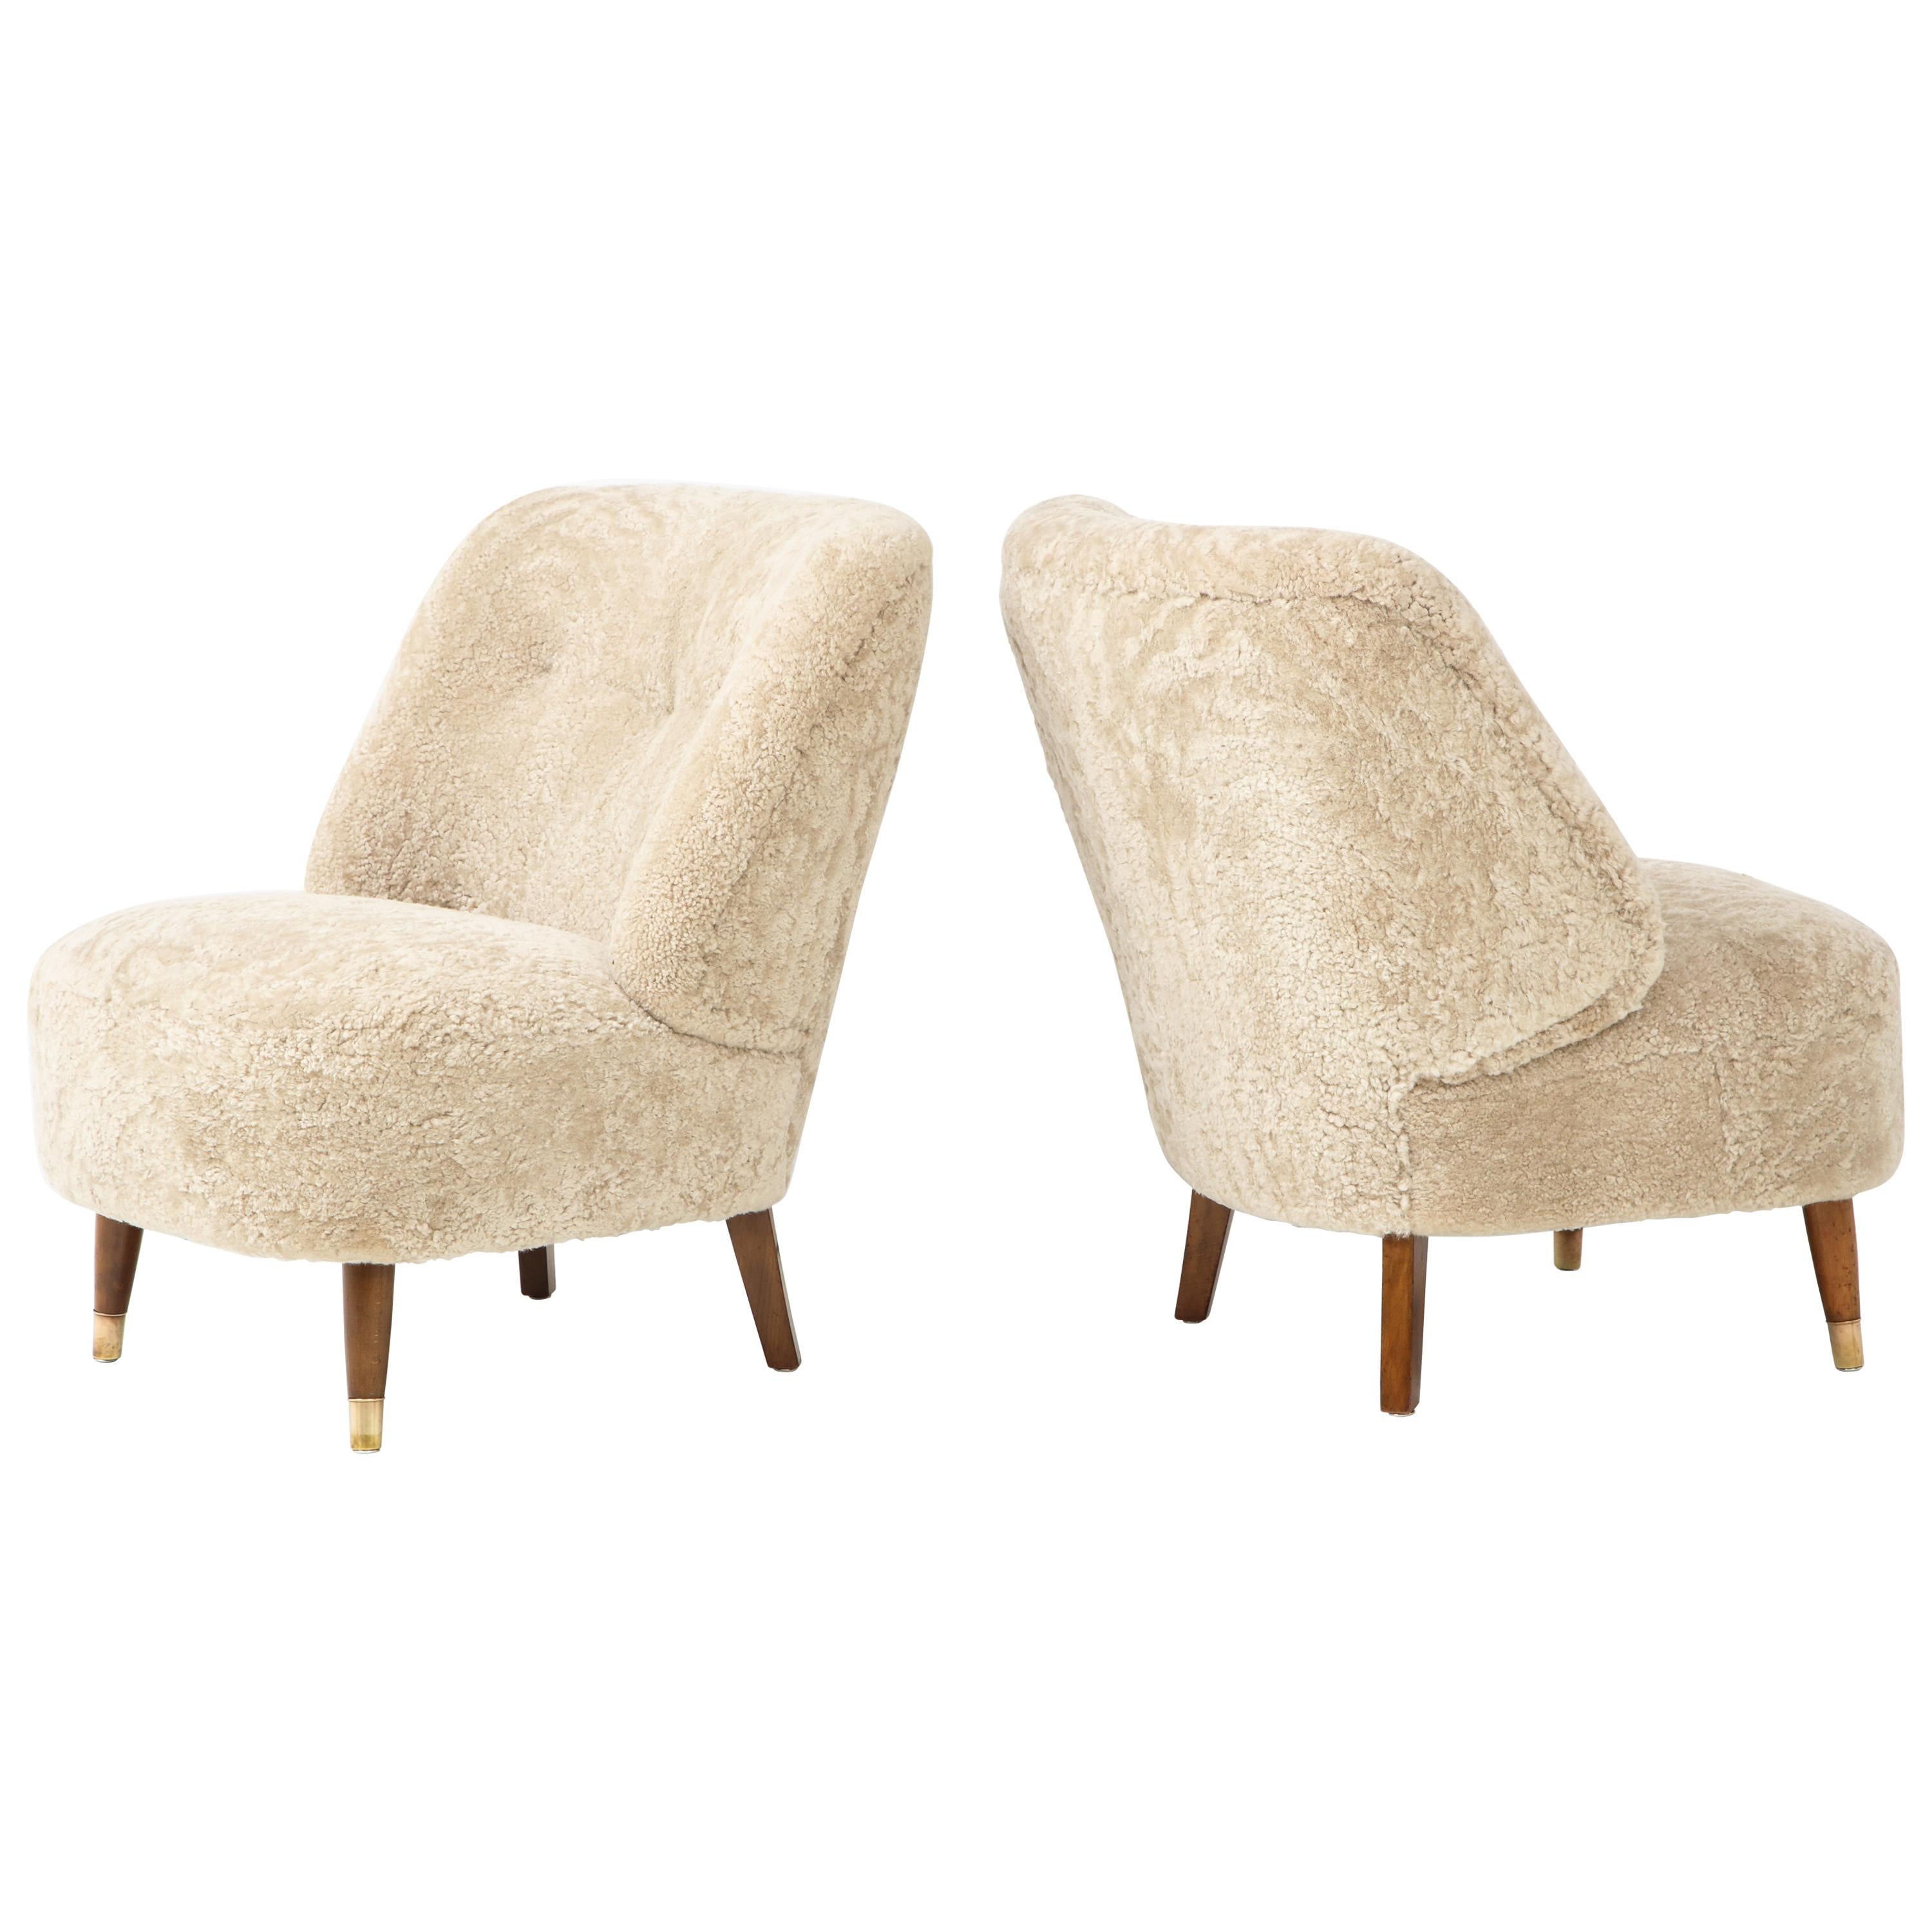 Pair of Danish Design Sheepskin Upholstered Chairs, circa 1930s